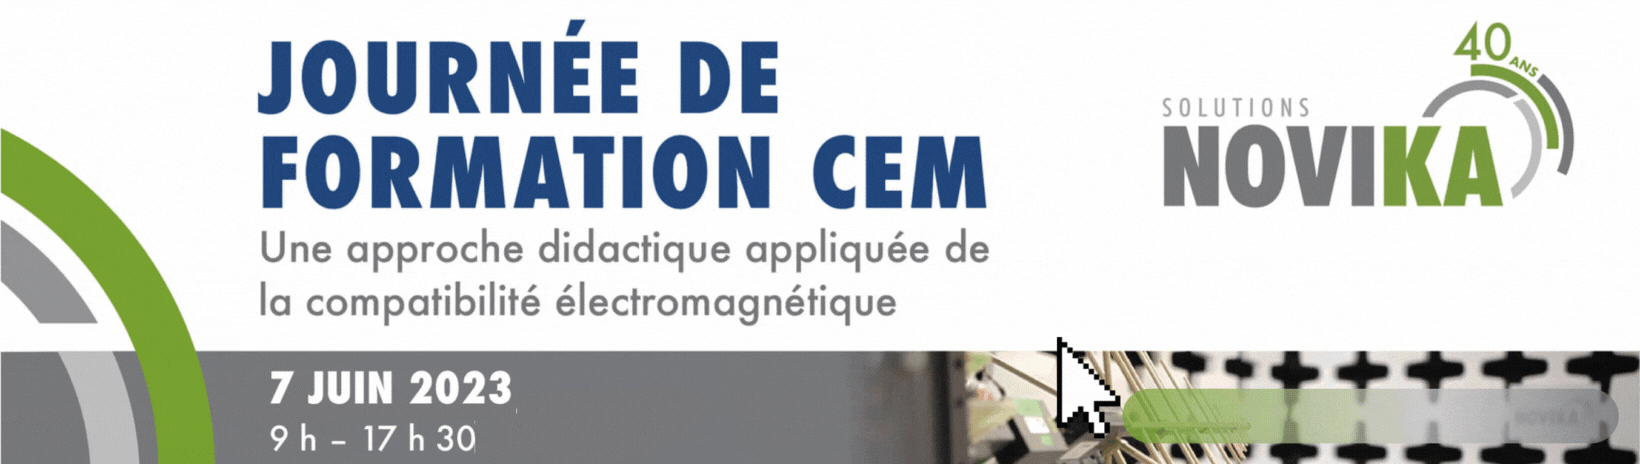 Bannière CEM w3-FR